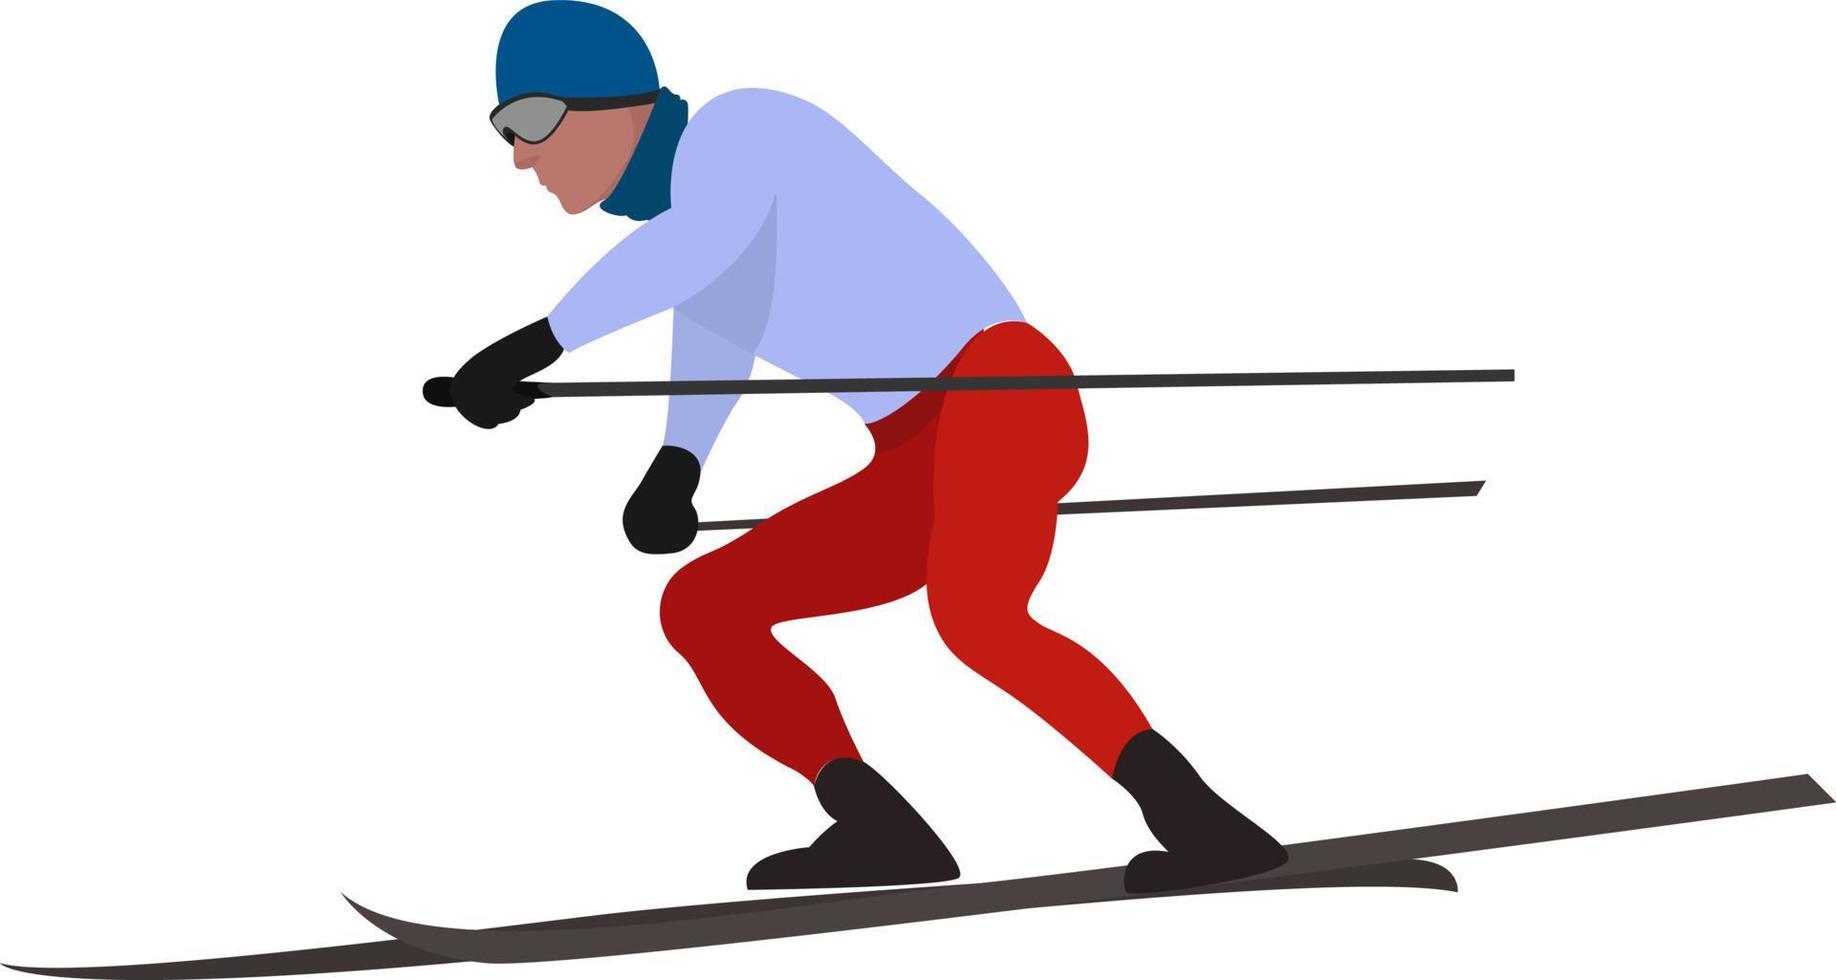 Mann beim Skifahren, Illustration, Vektor auf weißem Hintergrund